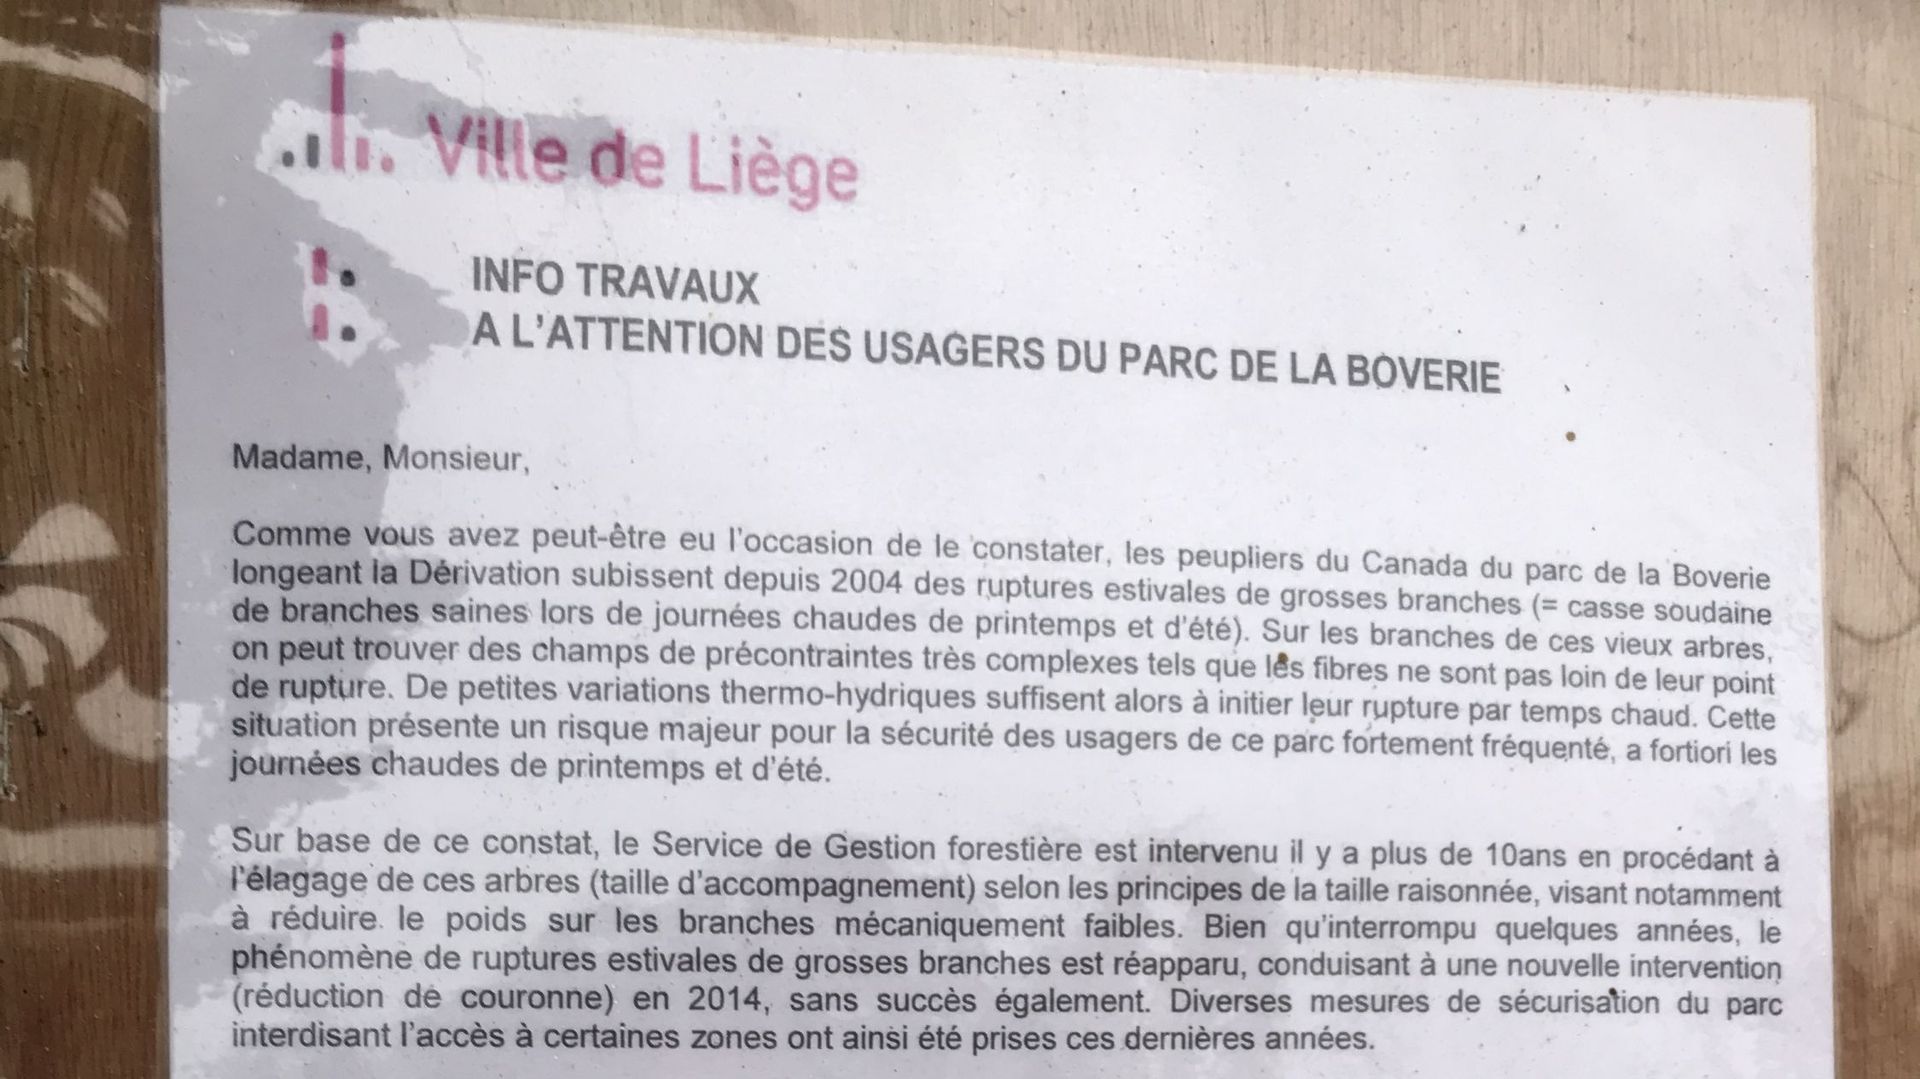 La ville de Liège a affiché une info travaux à l'attention des usagers du parc de la Boverie 